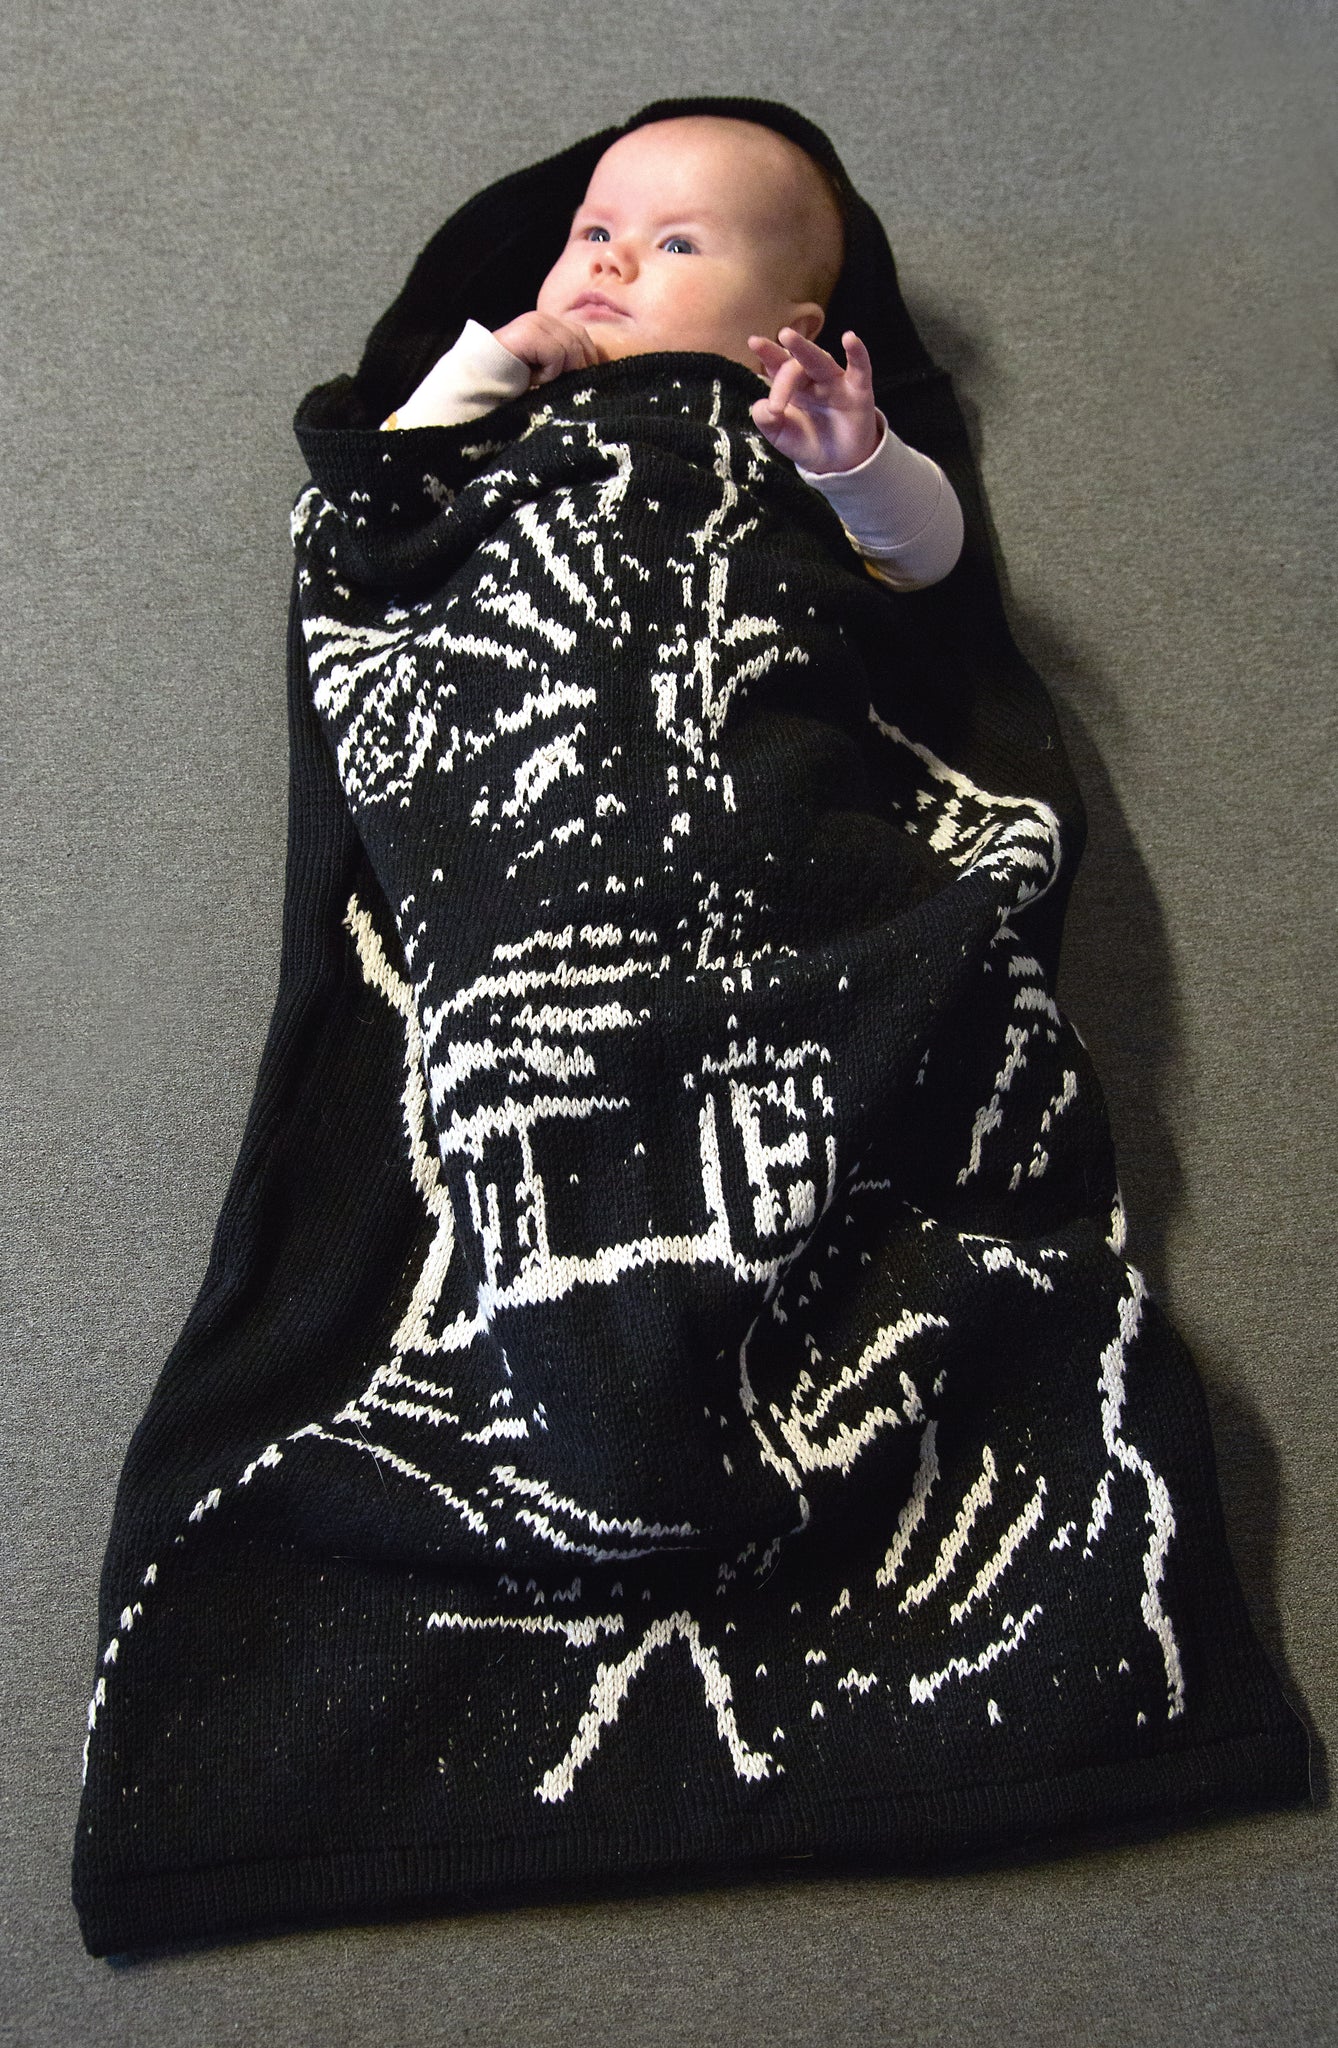  Stella in Tom of Finland knit by Marjukka Vuorisalo